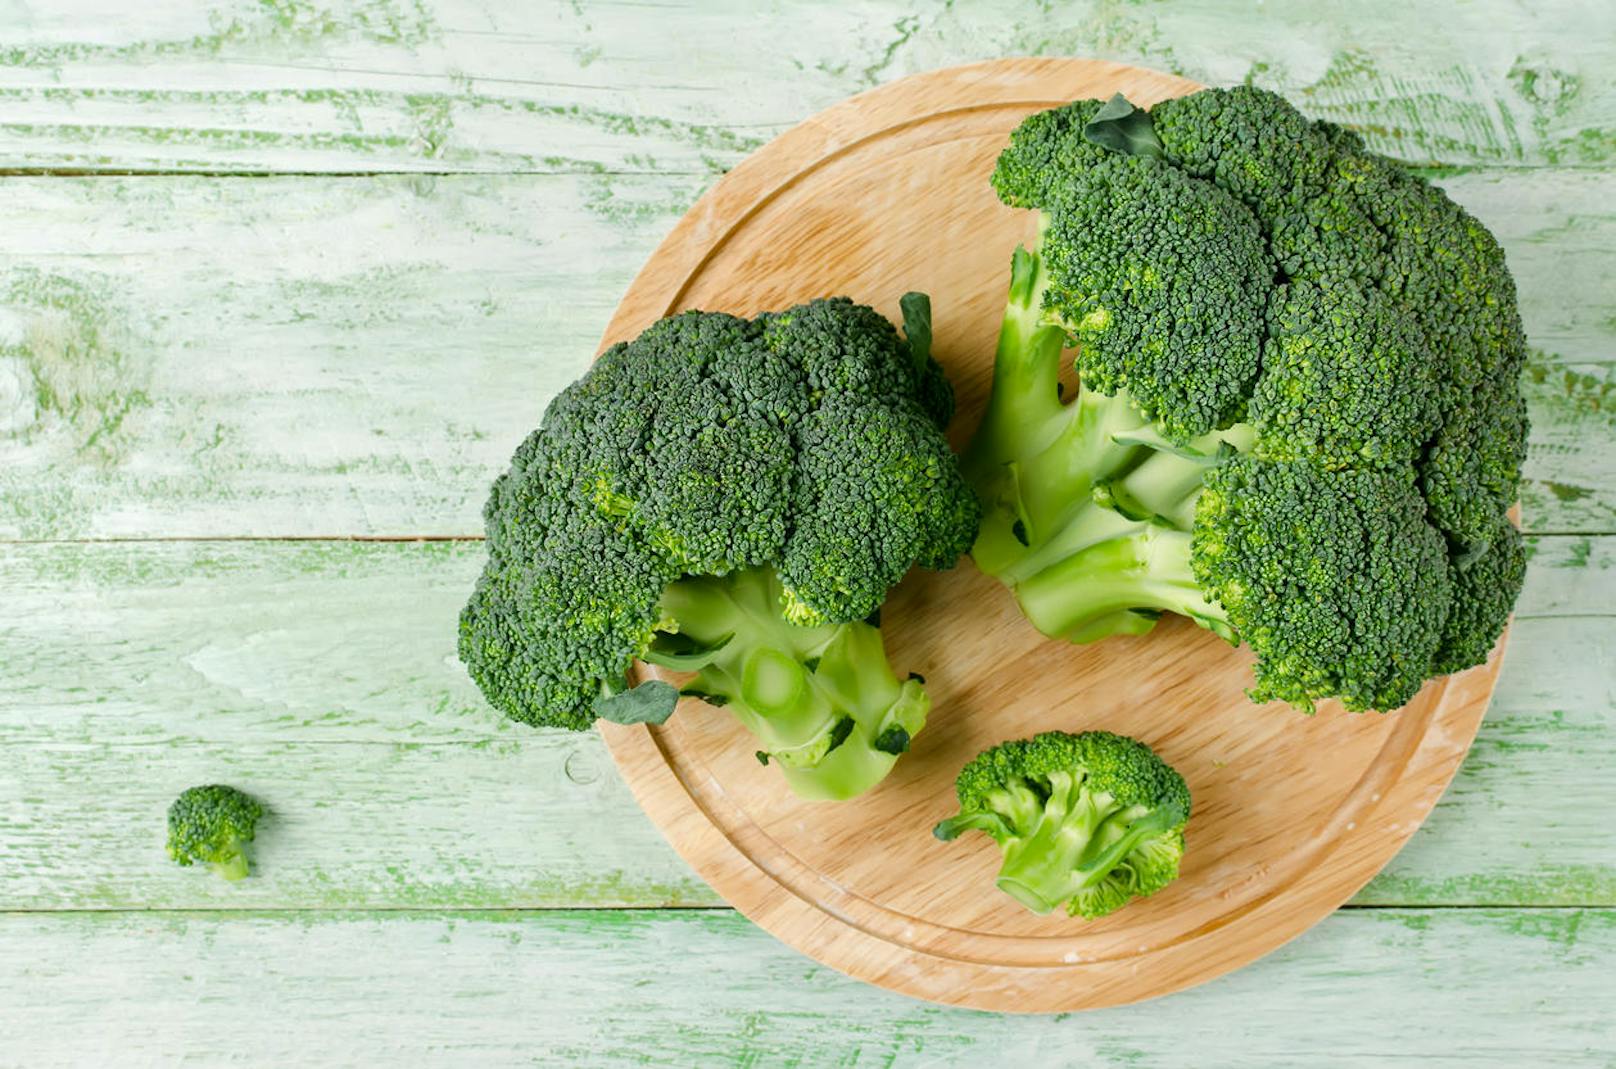 <b>Brokkoli</b>

Das Gemüse gilt als eines der gesündesten Lebensmittel der Welt, denn es ist reich an Eiweiß, Vitaminen sowie Ballaststoffen und damit sehr sättigend, dabei aber extrem kalorienarm: 100 Gramm Brokkoli enthalten ganze 3 Gramm Ballaststoffe, dabei aber nur 25 Kalorien. Kaum ein anderes Gemüse kann diese Superbilanz aufweisen.